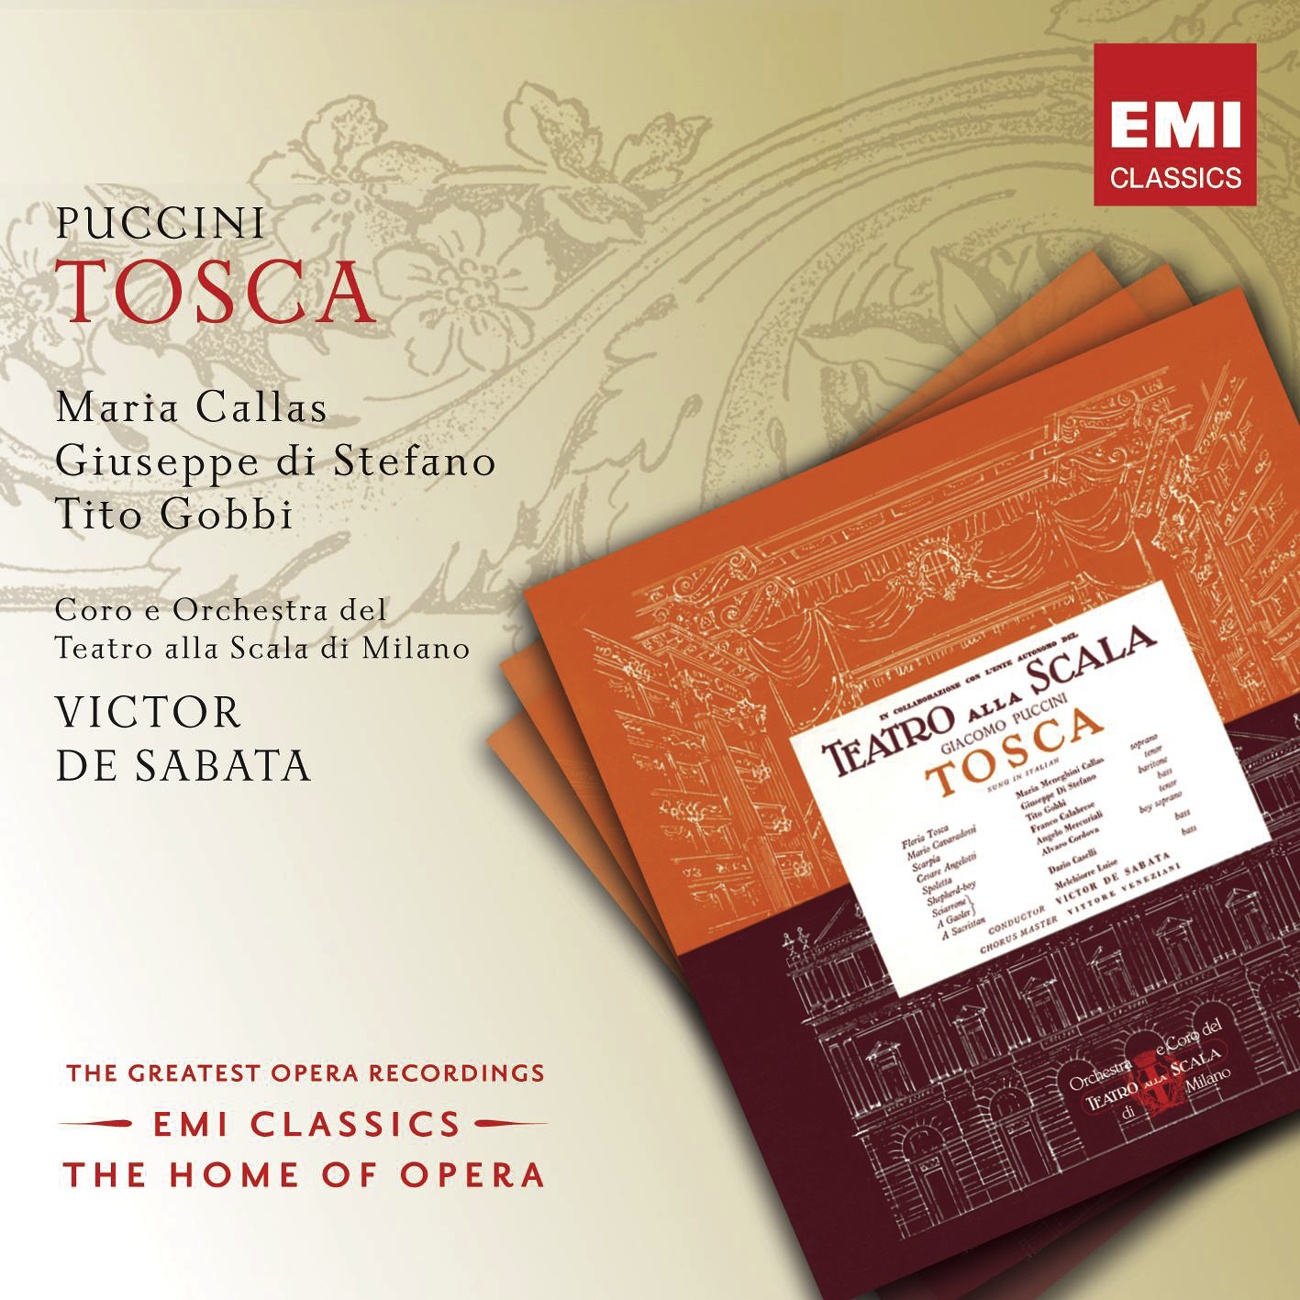 Tosca (2002 Digital Remaster), ACT TWO: Vedi, le man giunte io stendo a te! (Tosca/Scarpia/Spoletta)